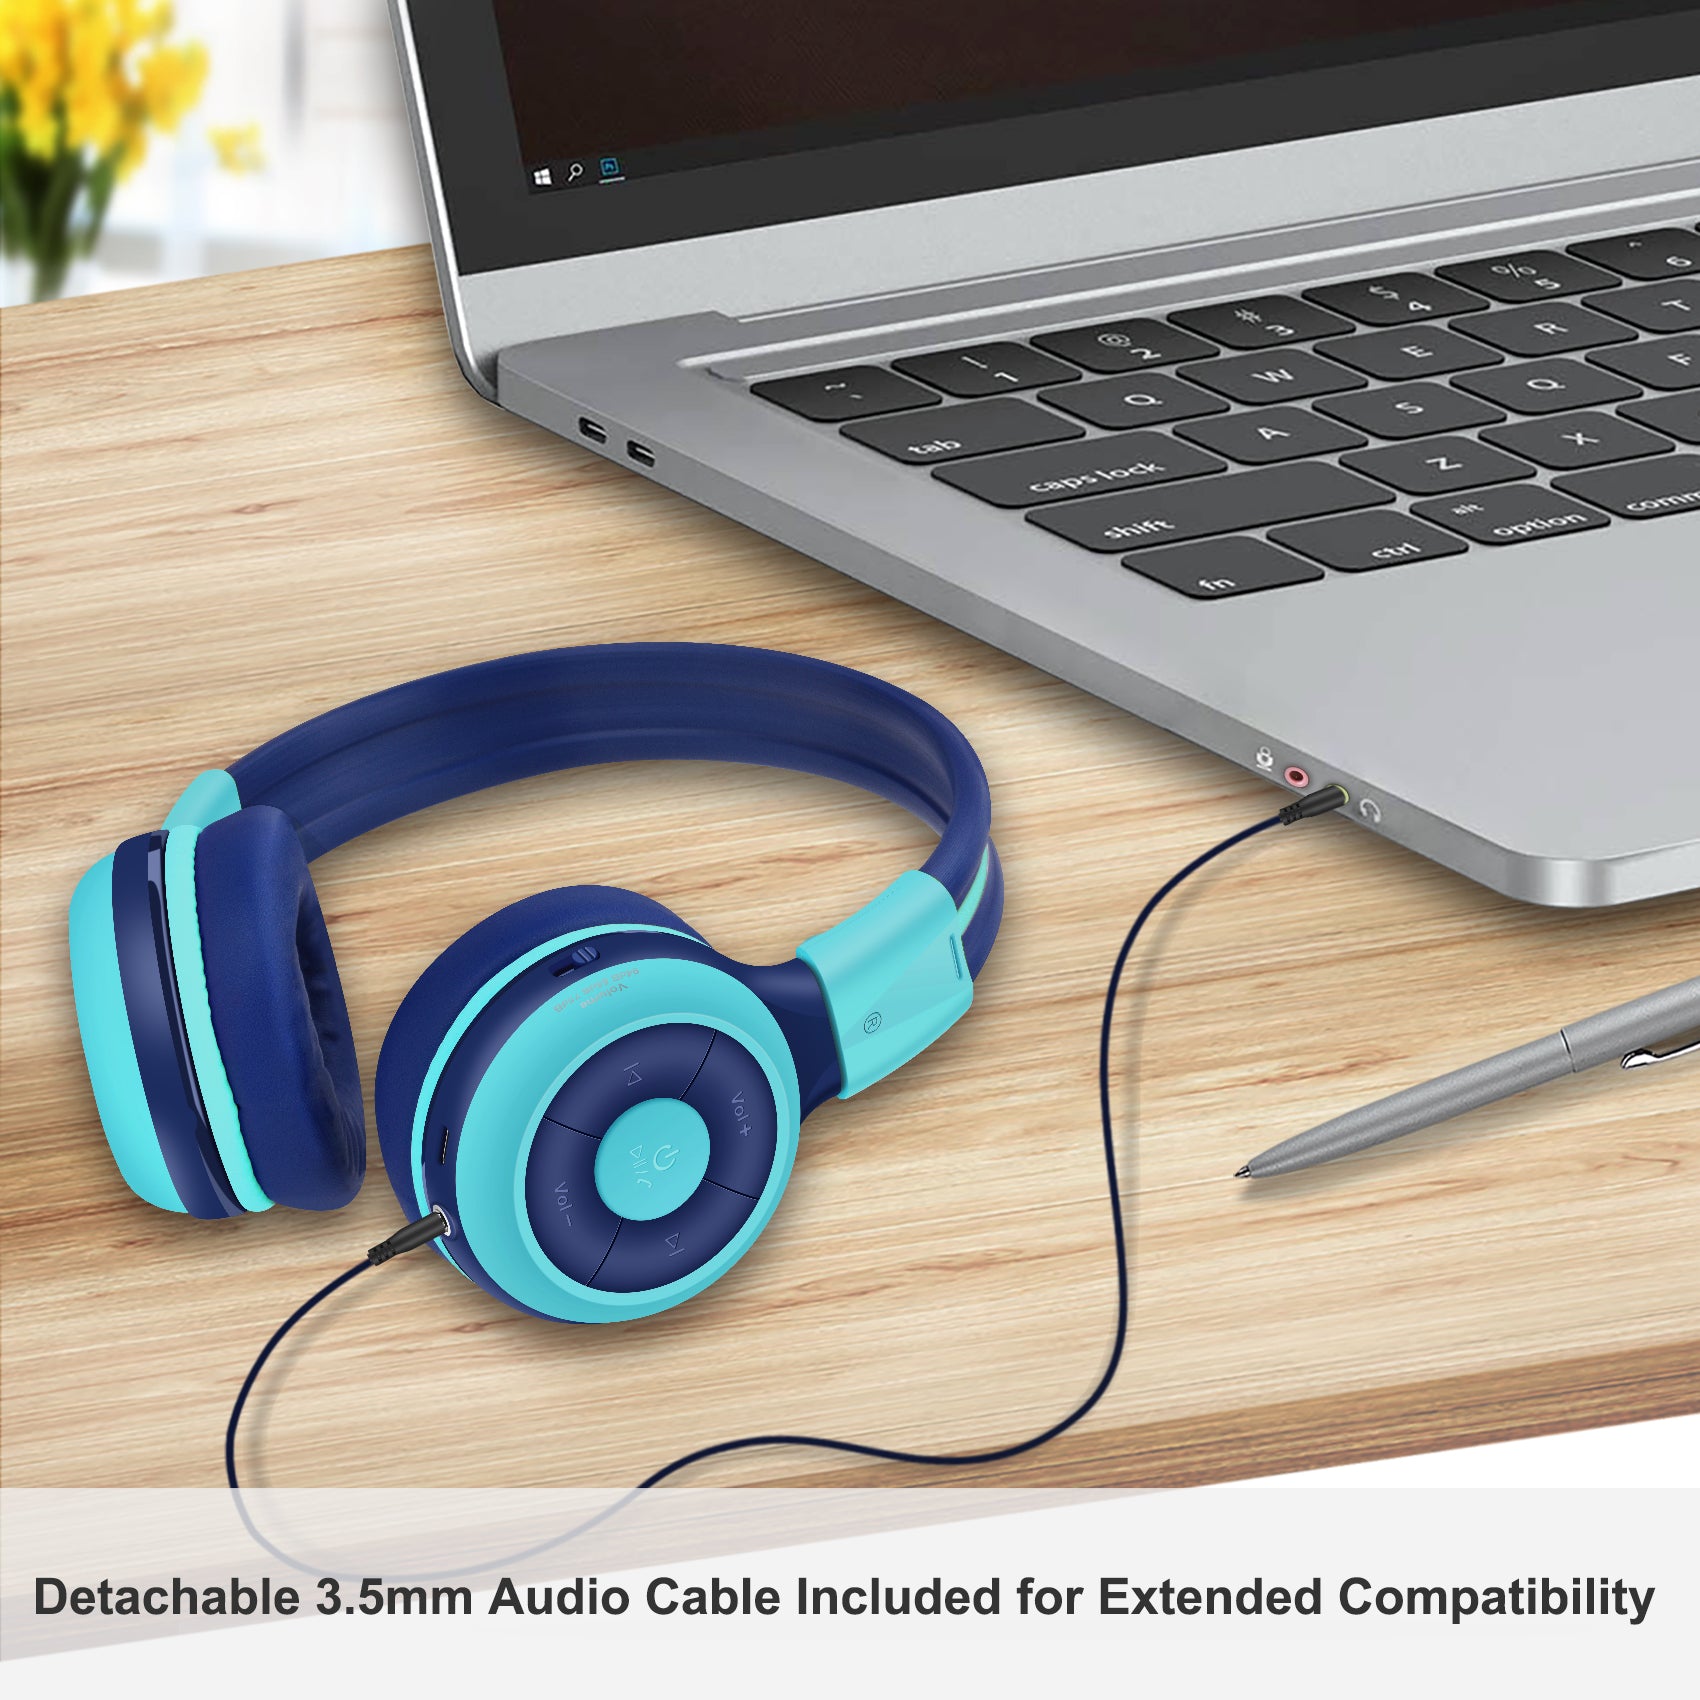 Simolio JH-712 kids wireless headphones detachable 3.5mm audio cable